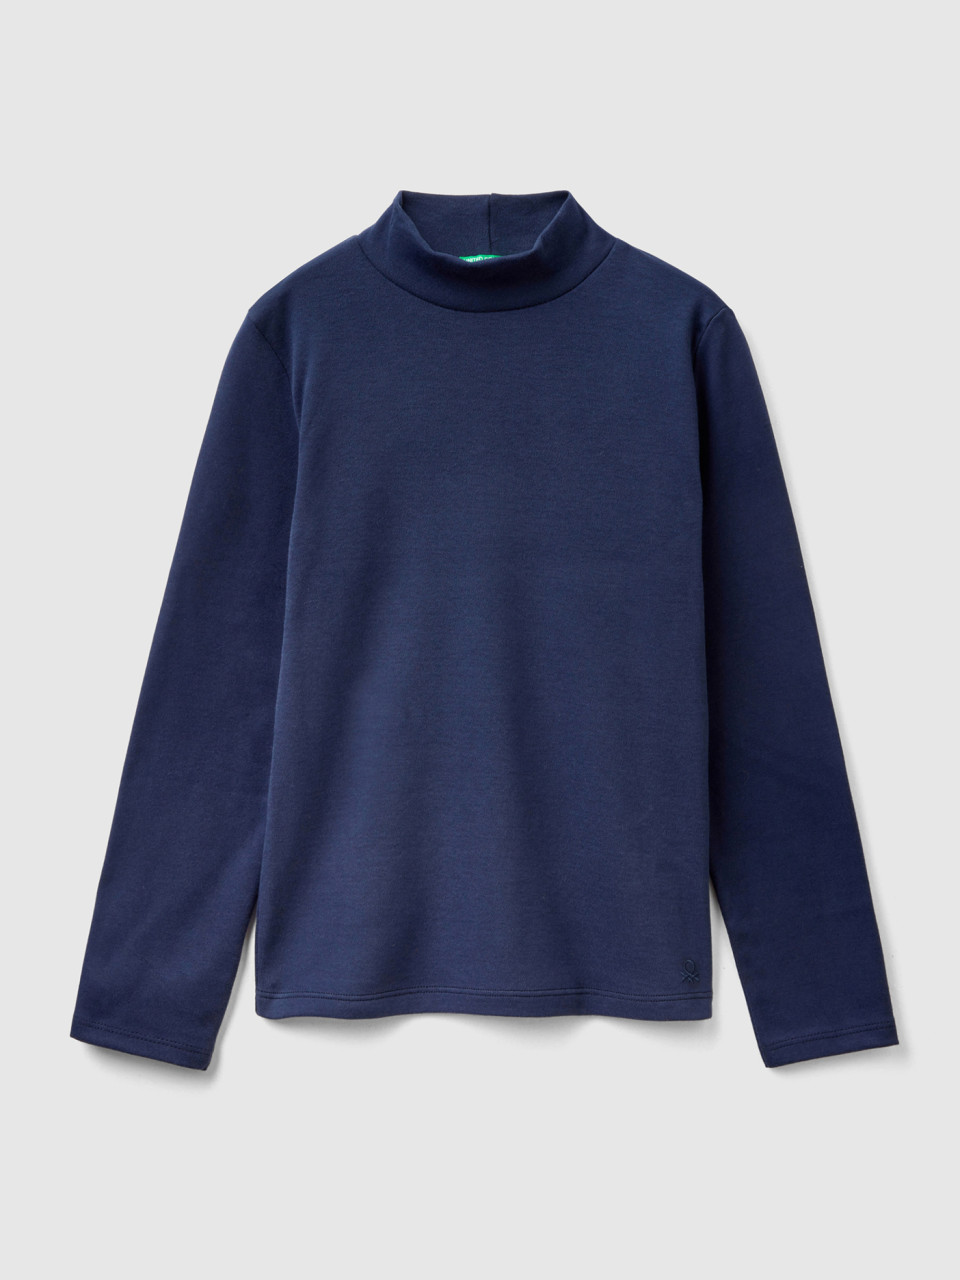 Benetton, T-shirt En Pur Coton Bio, Bleu Foncé, Enfants